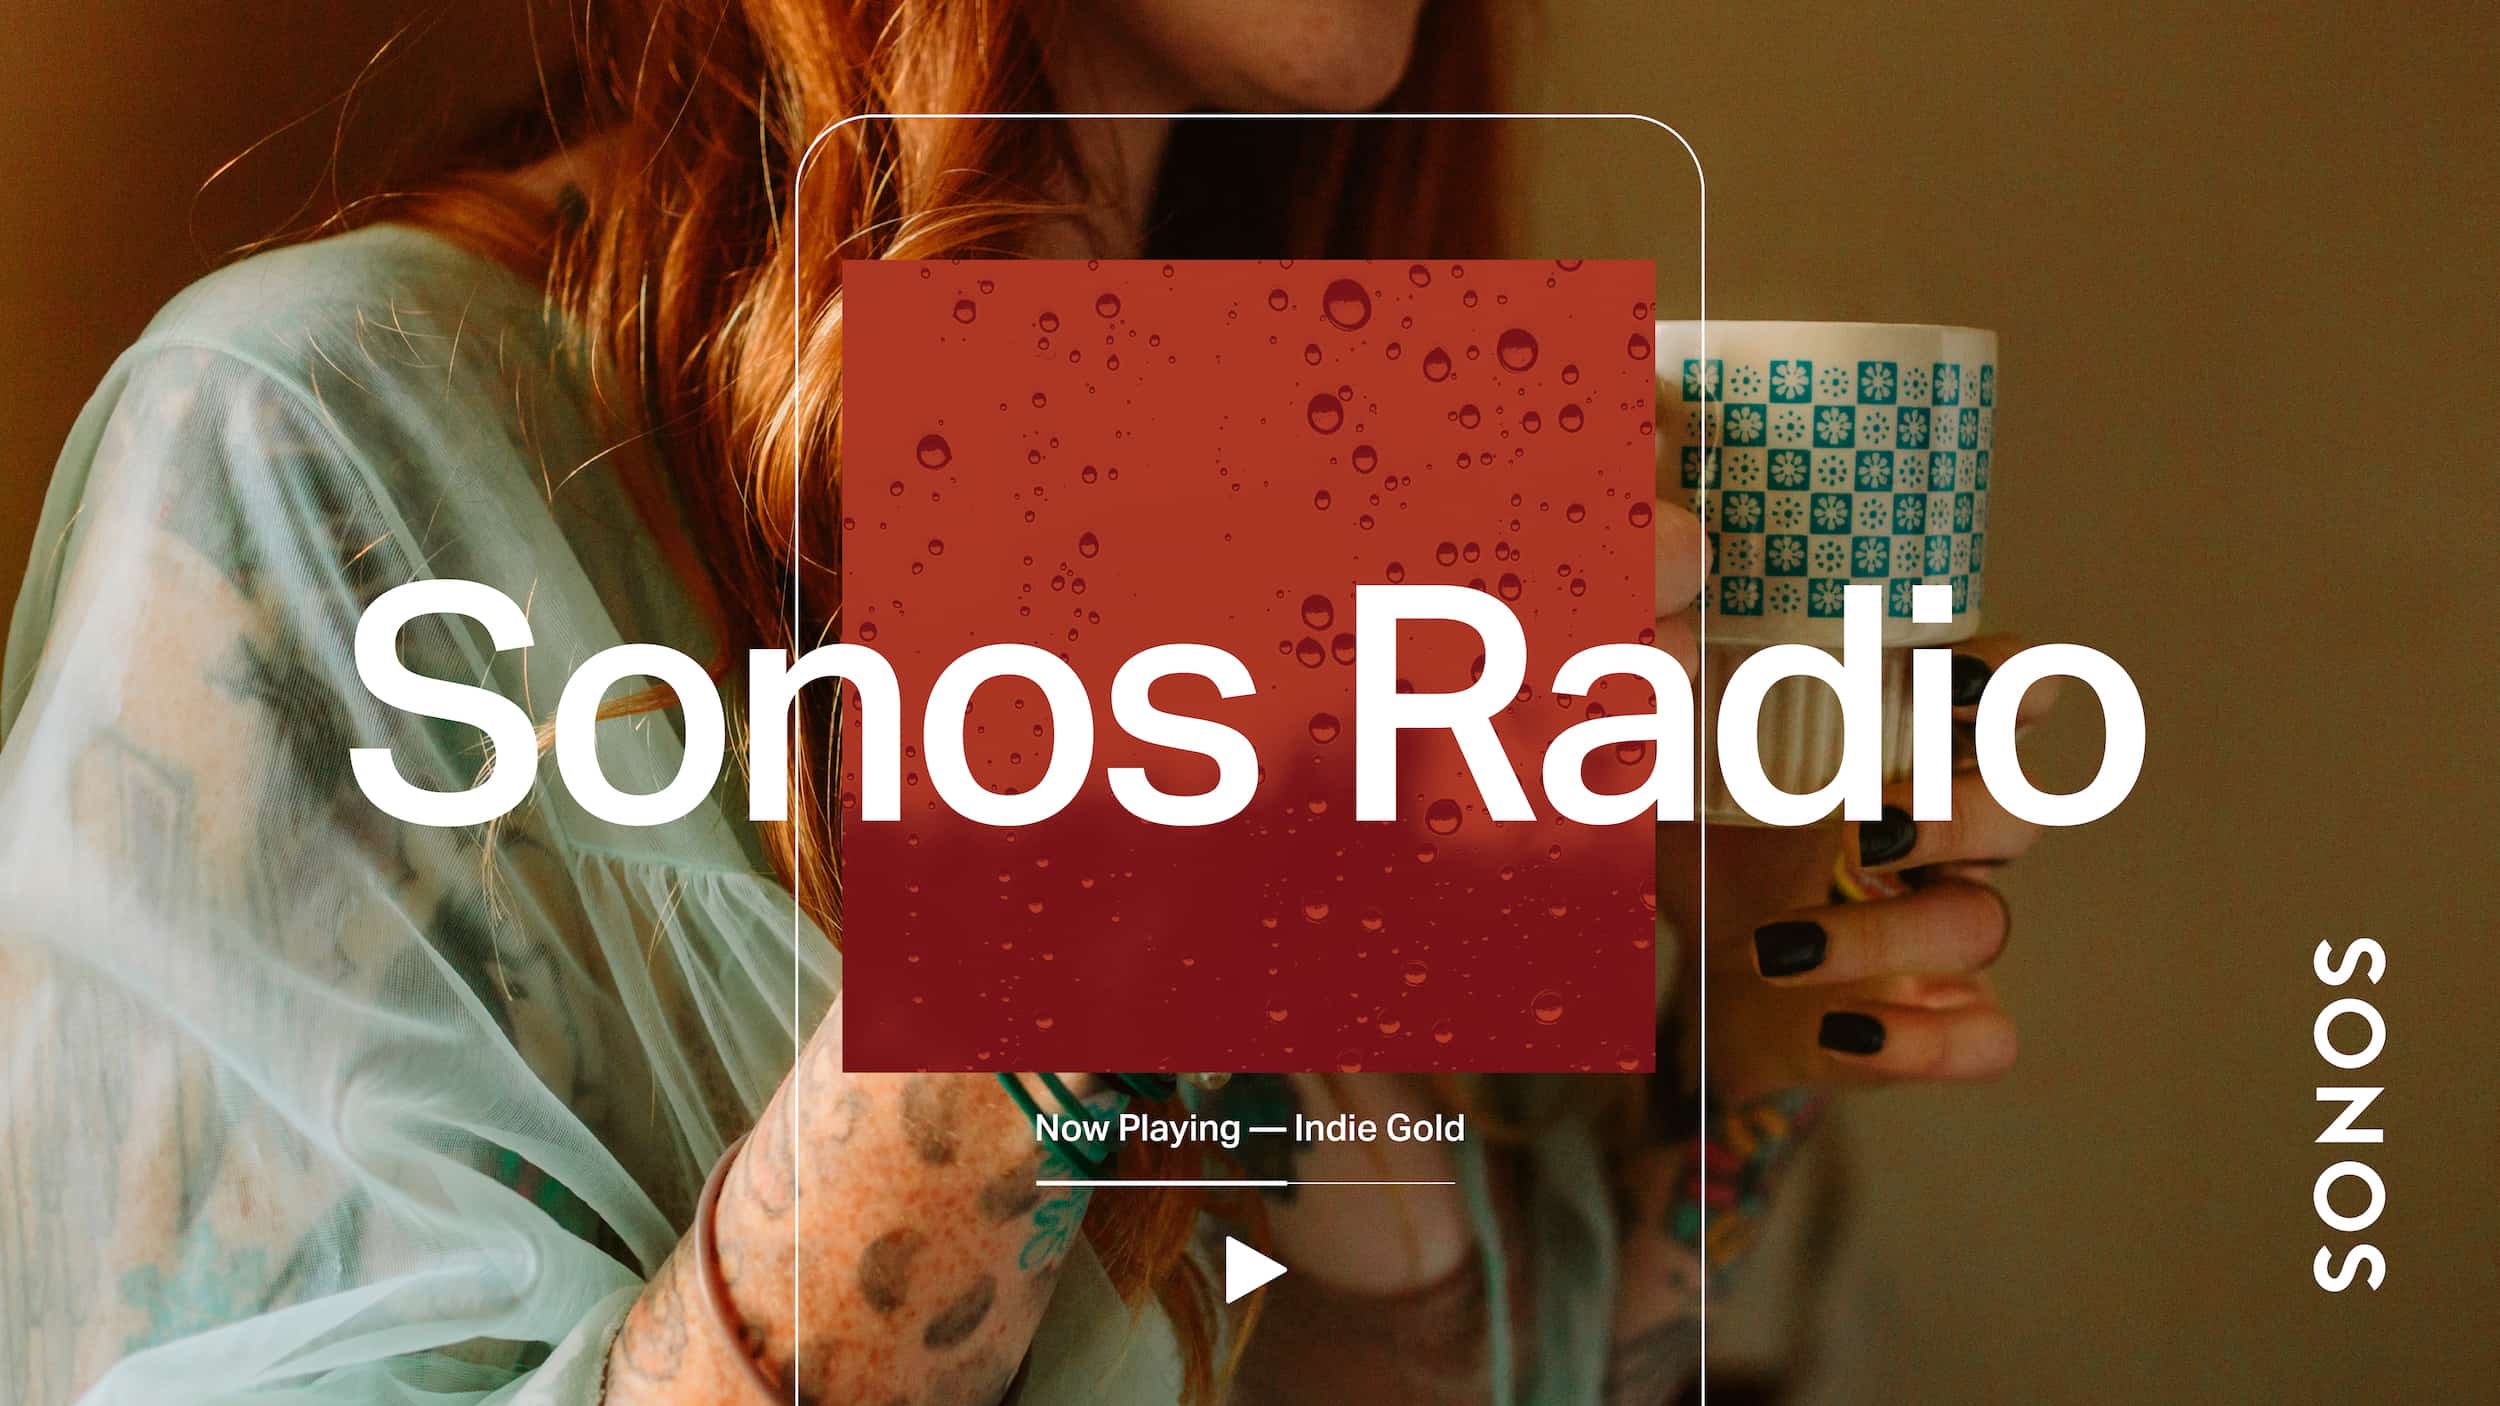 Sonos Radio HD